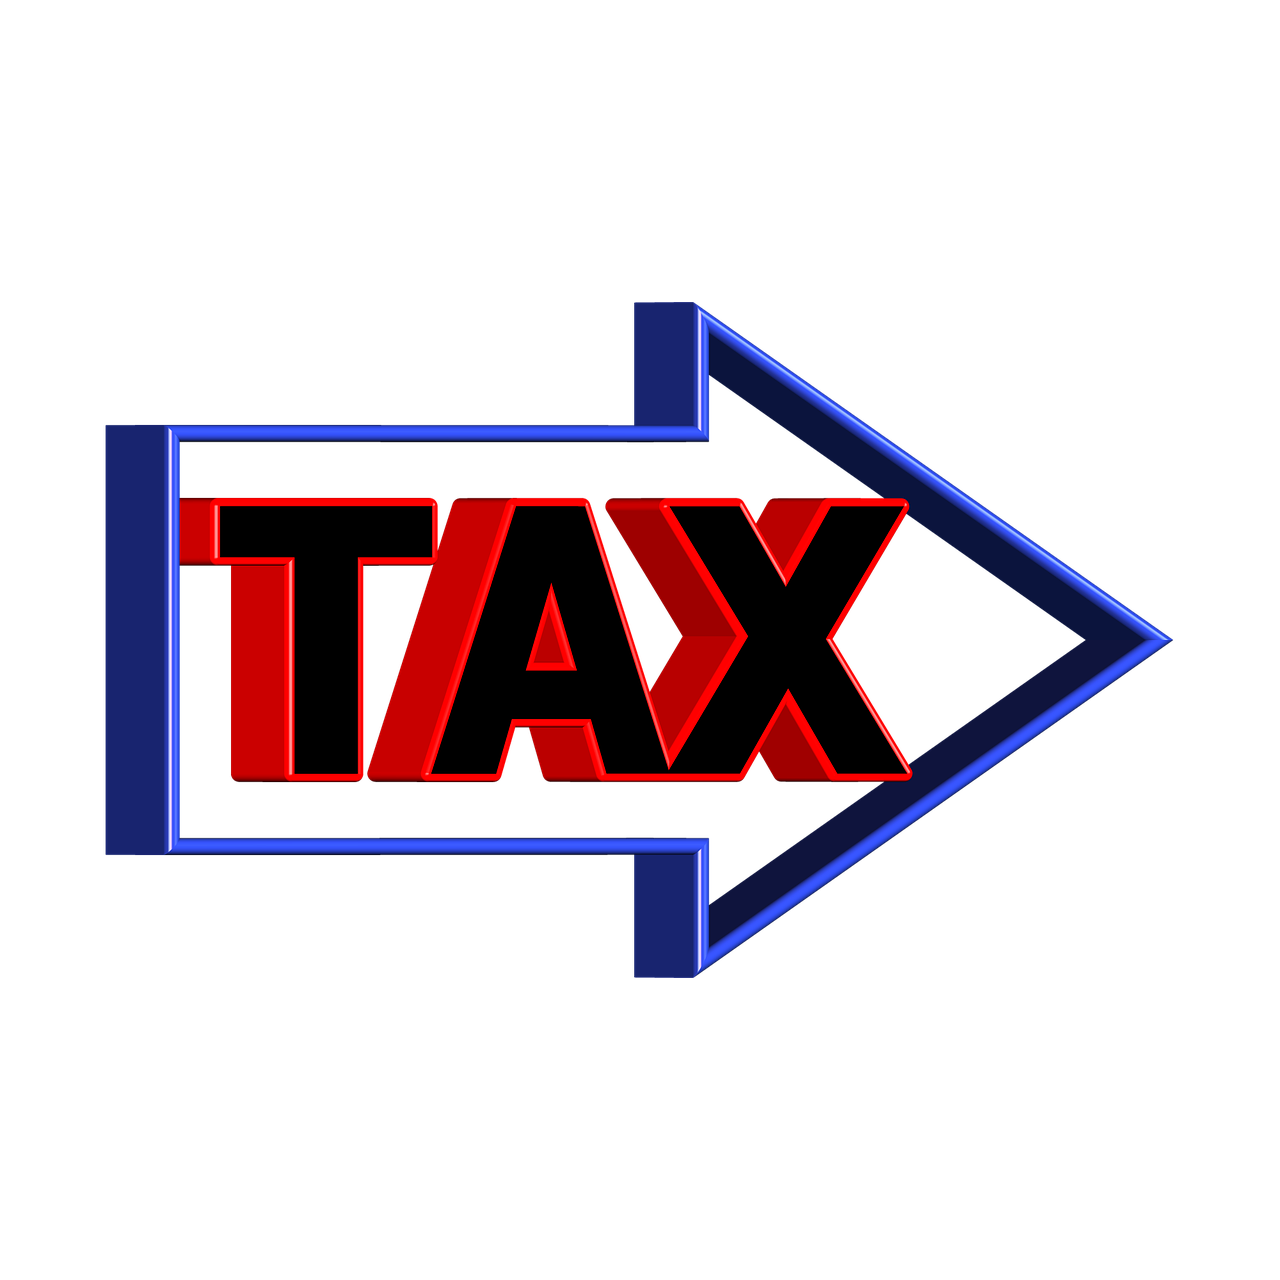 個人事業主が支払う税金は何？個人事業主が納める税金の税額や税率も合わせて解説します